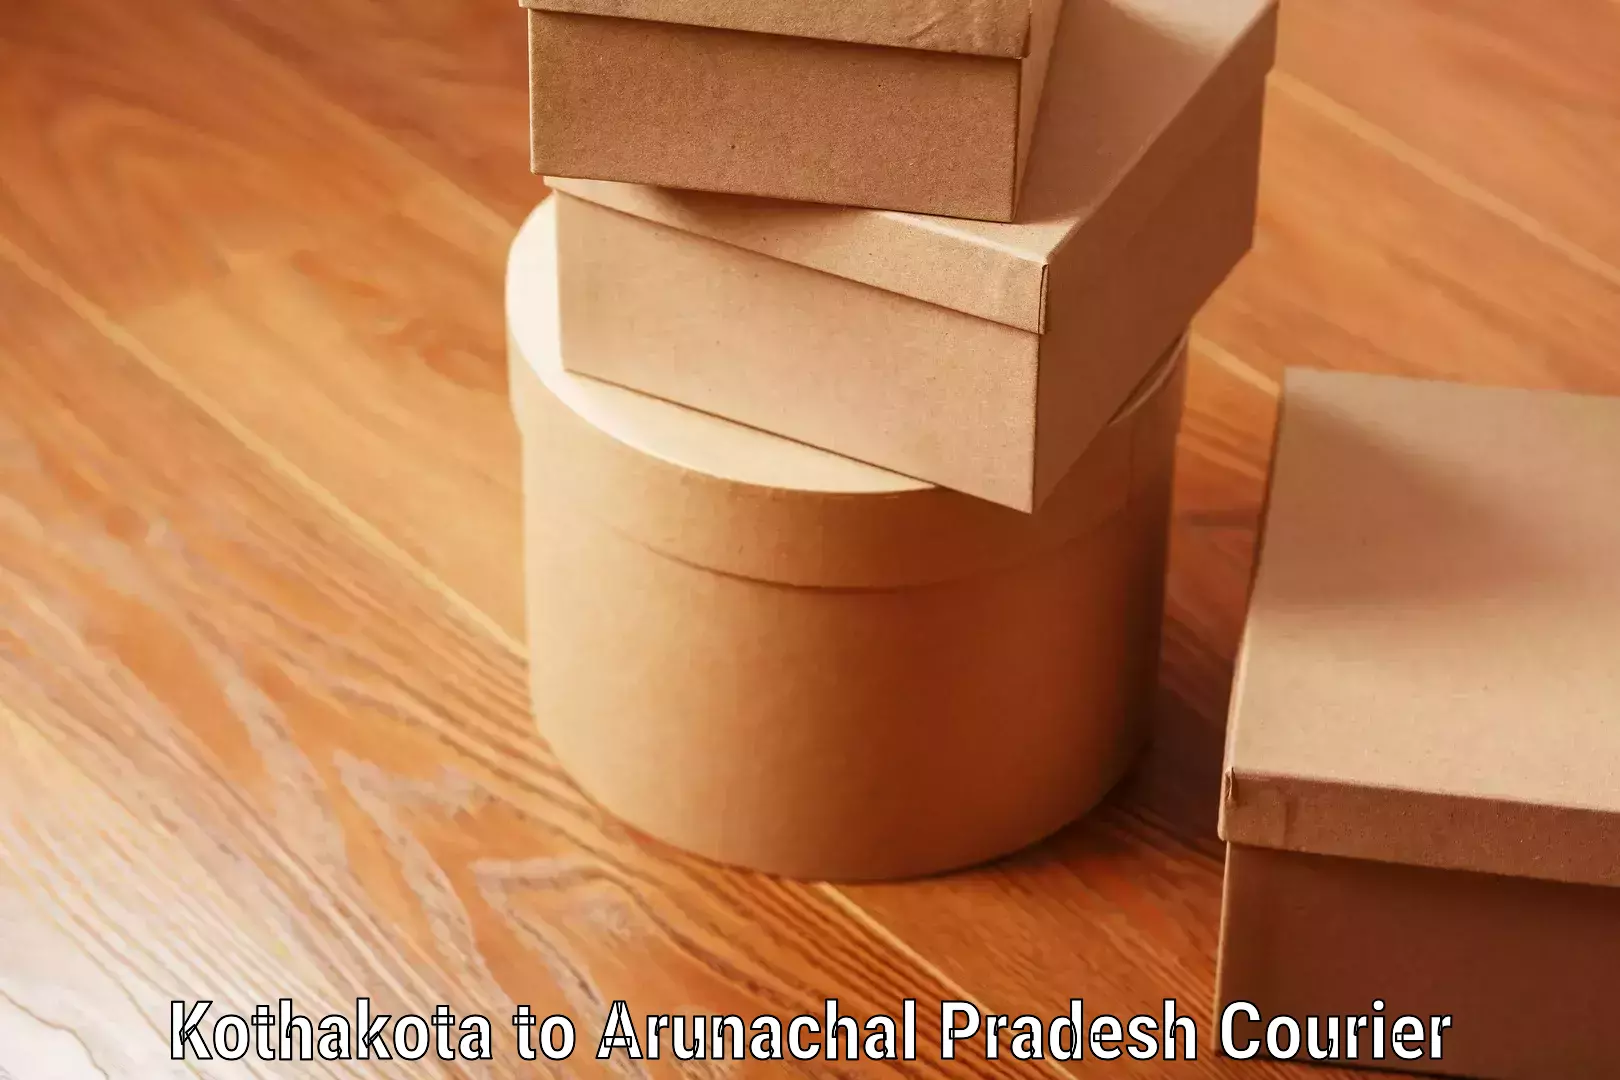 Personal effects shipping Kothakota to Arunachal Pradesh